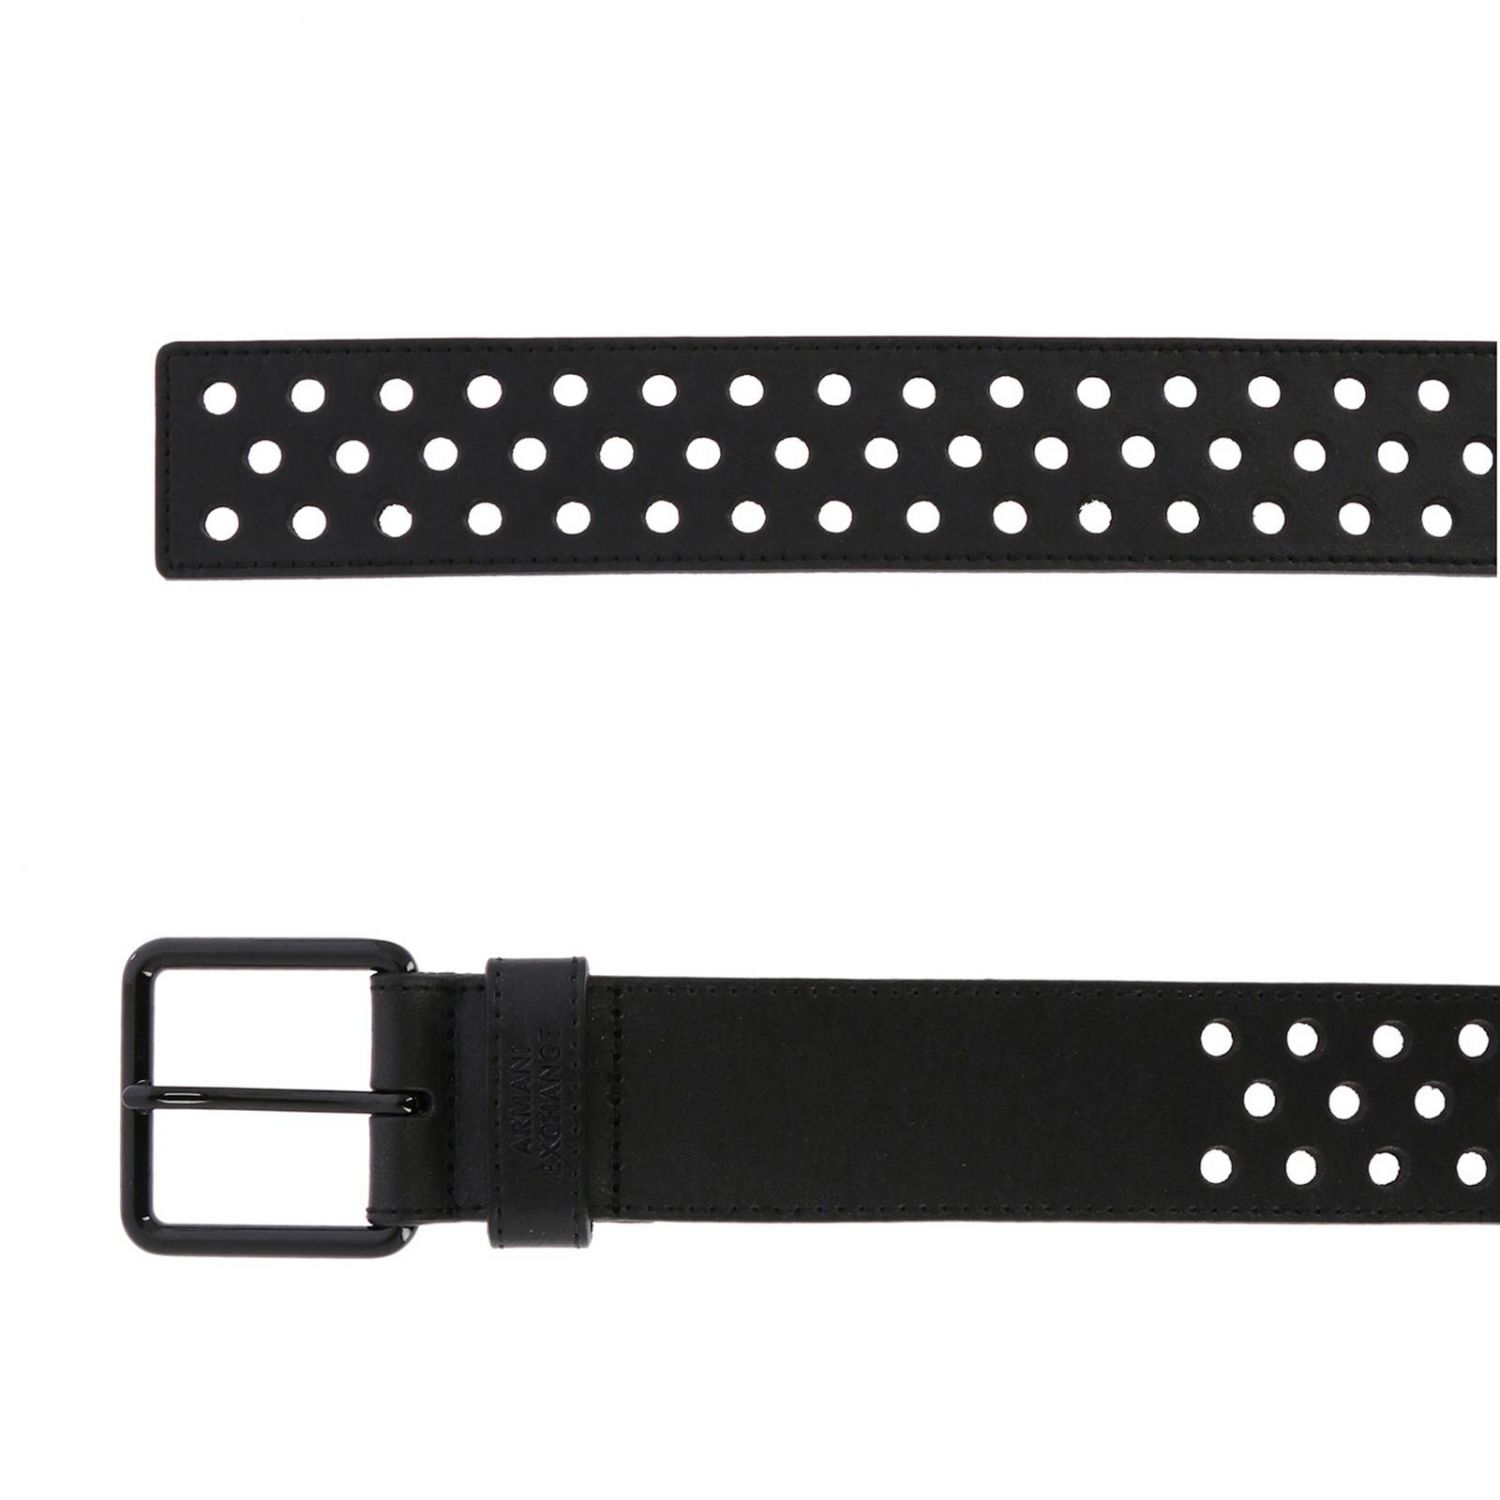 Armani Exchange Outlet: belt for woman - Black | Armani Exchange belt ...